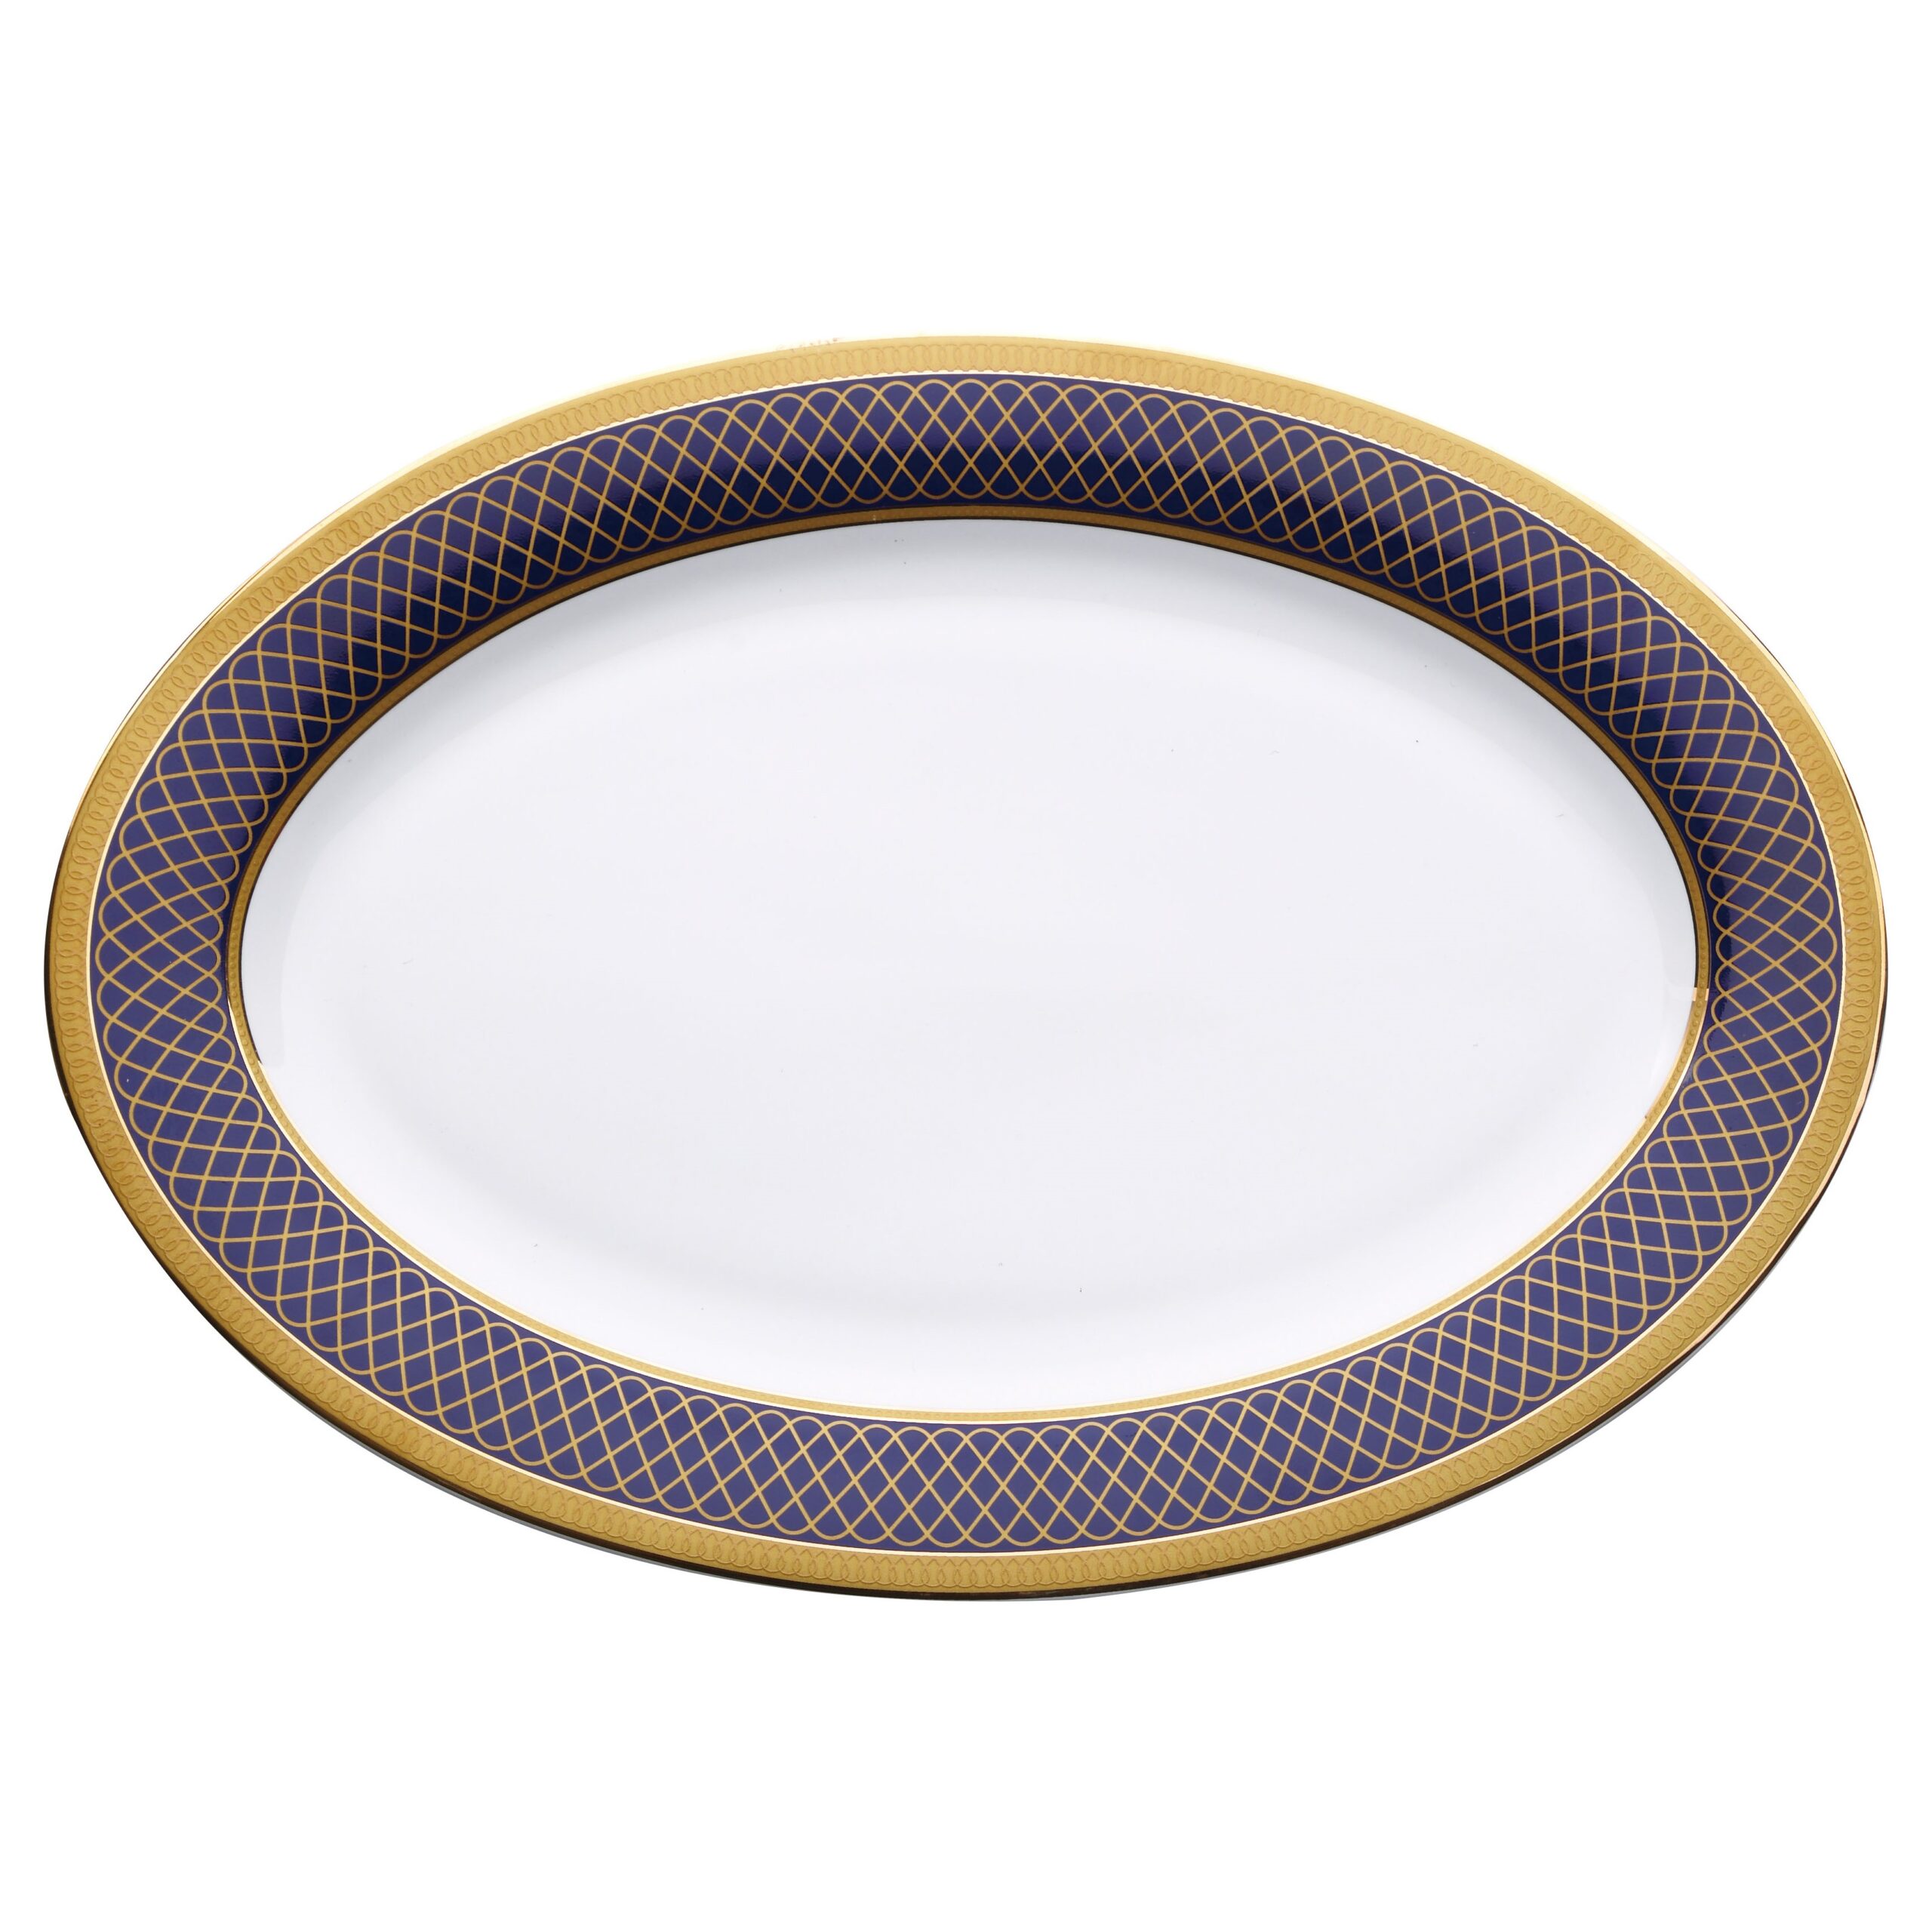 Bergner Vertigo Oval Plate, White & Blue